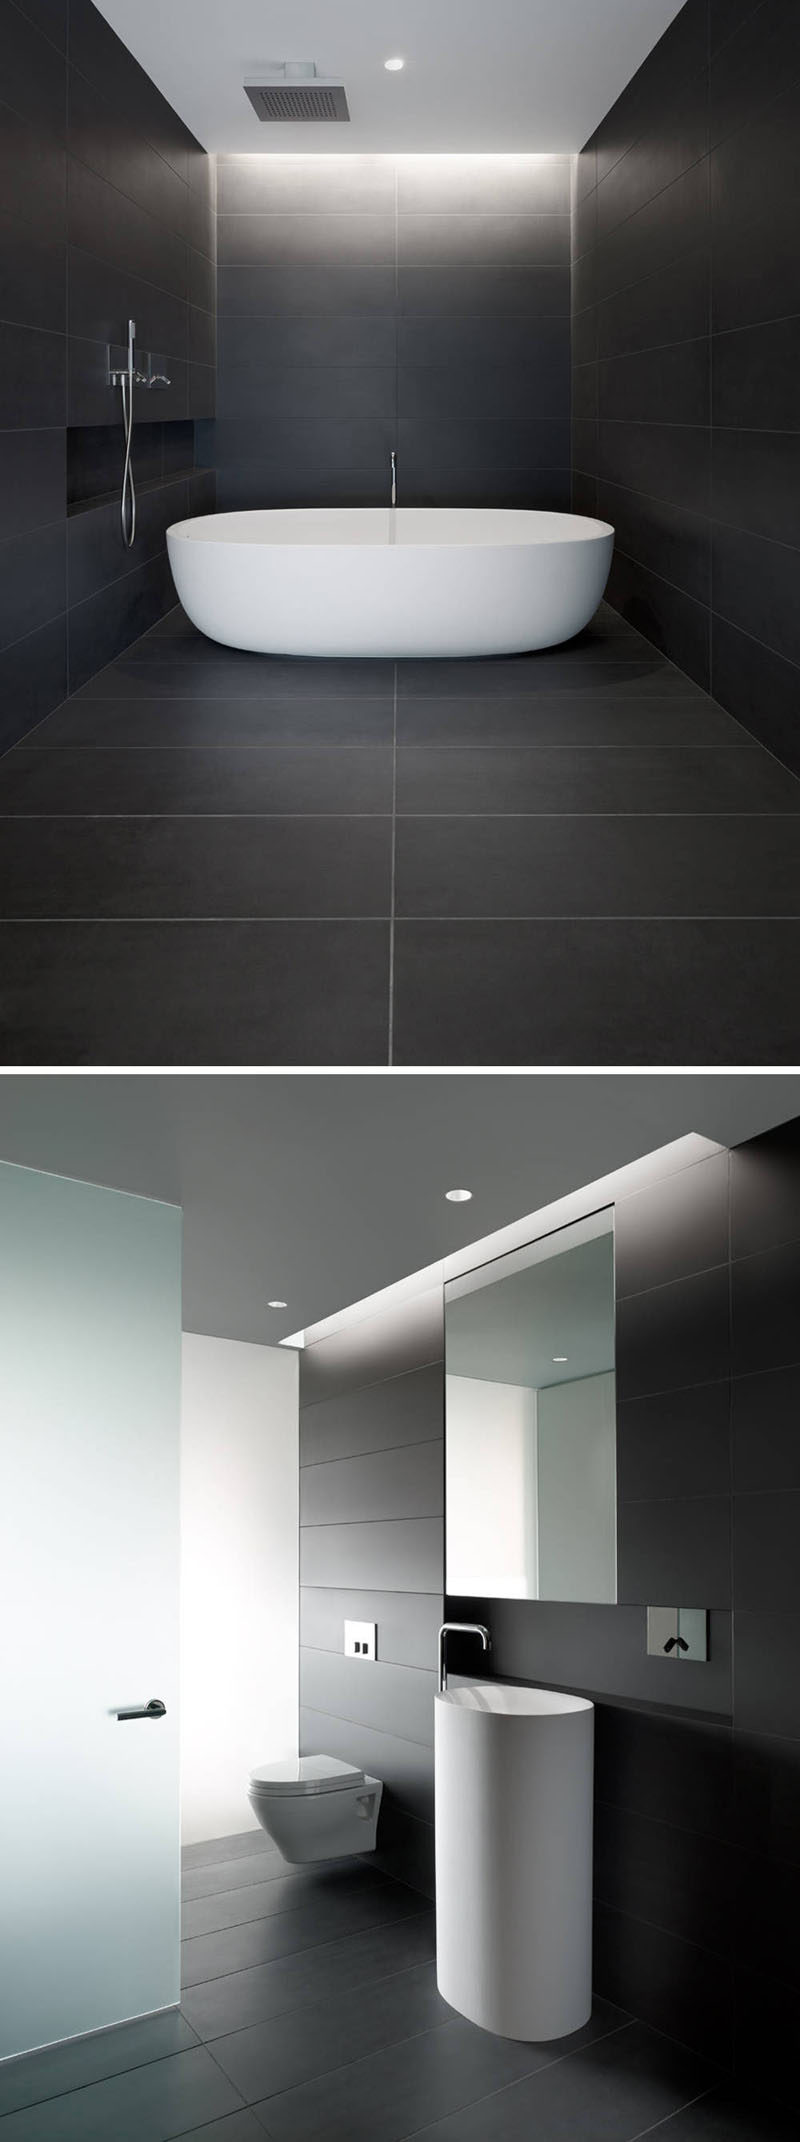 Идеи плитки для ванной комнаты - используйте большую плитку на полу и стенах // Большая темная плитка, покрывающая пол и стены этой ванной комнаты, создает красивые линии, которые плавно переходят друг в друга, создавая спокойное, расслабляющее пространство.